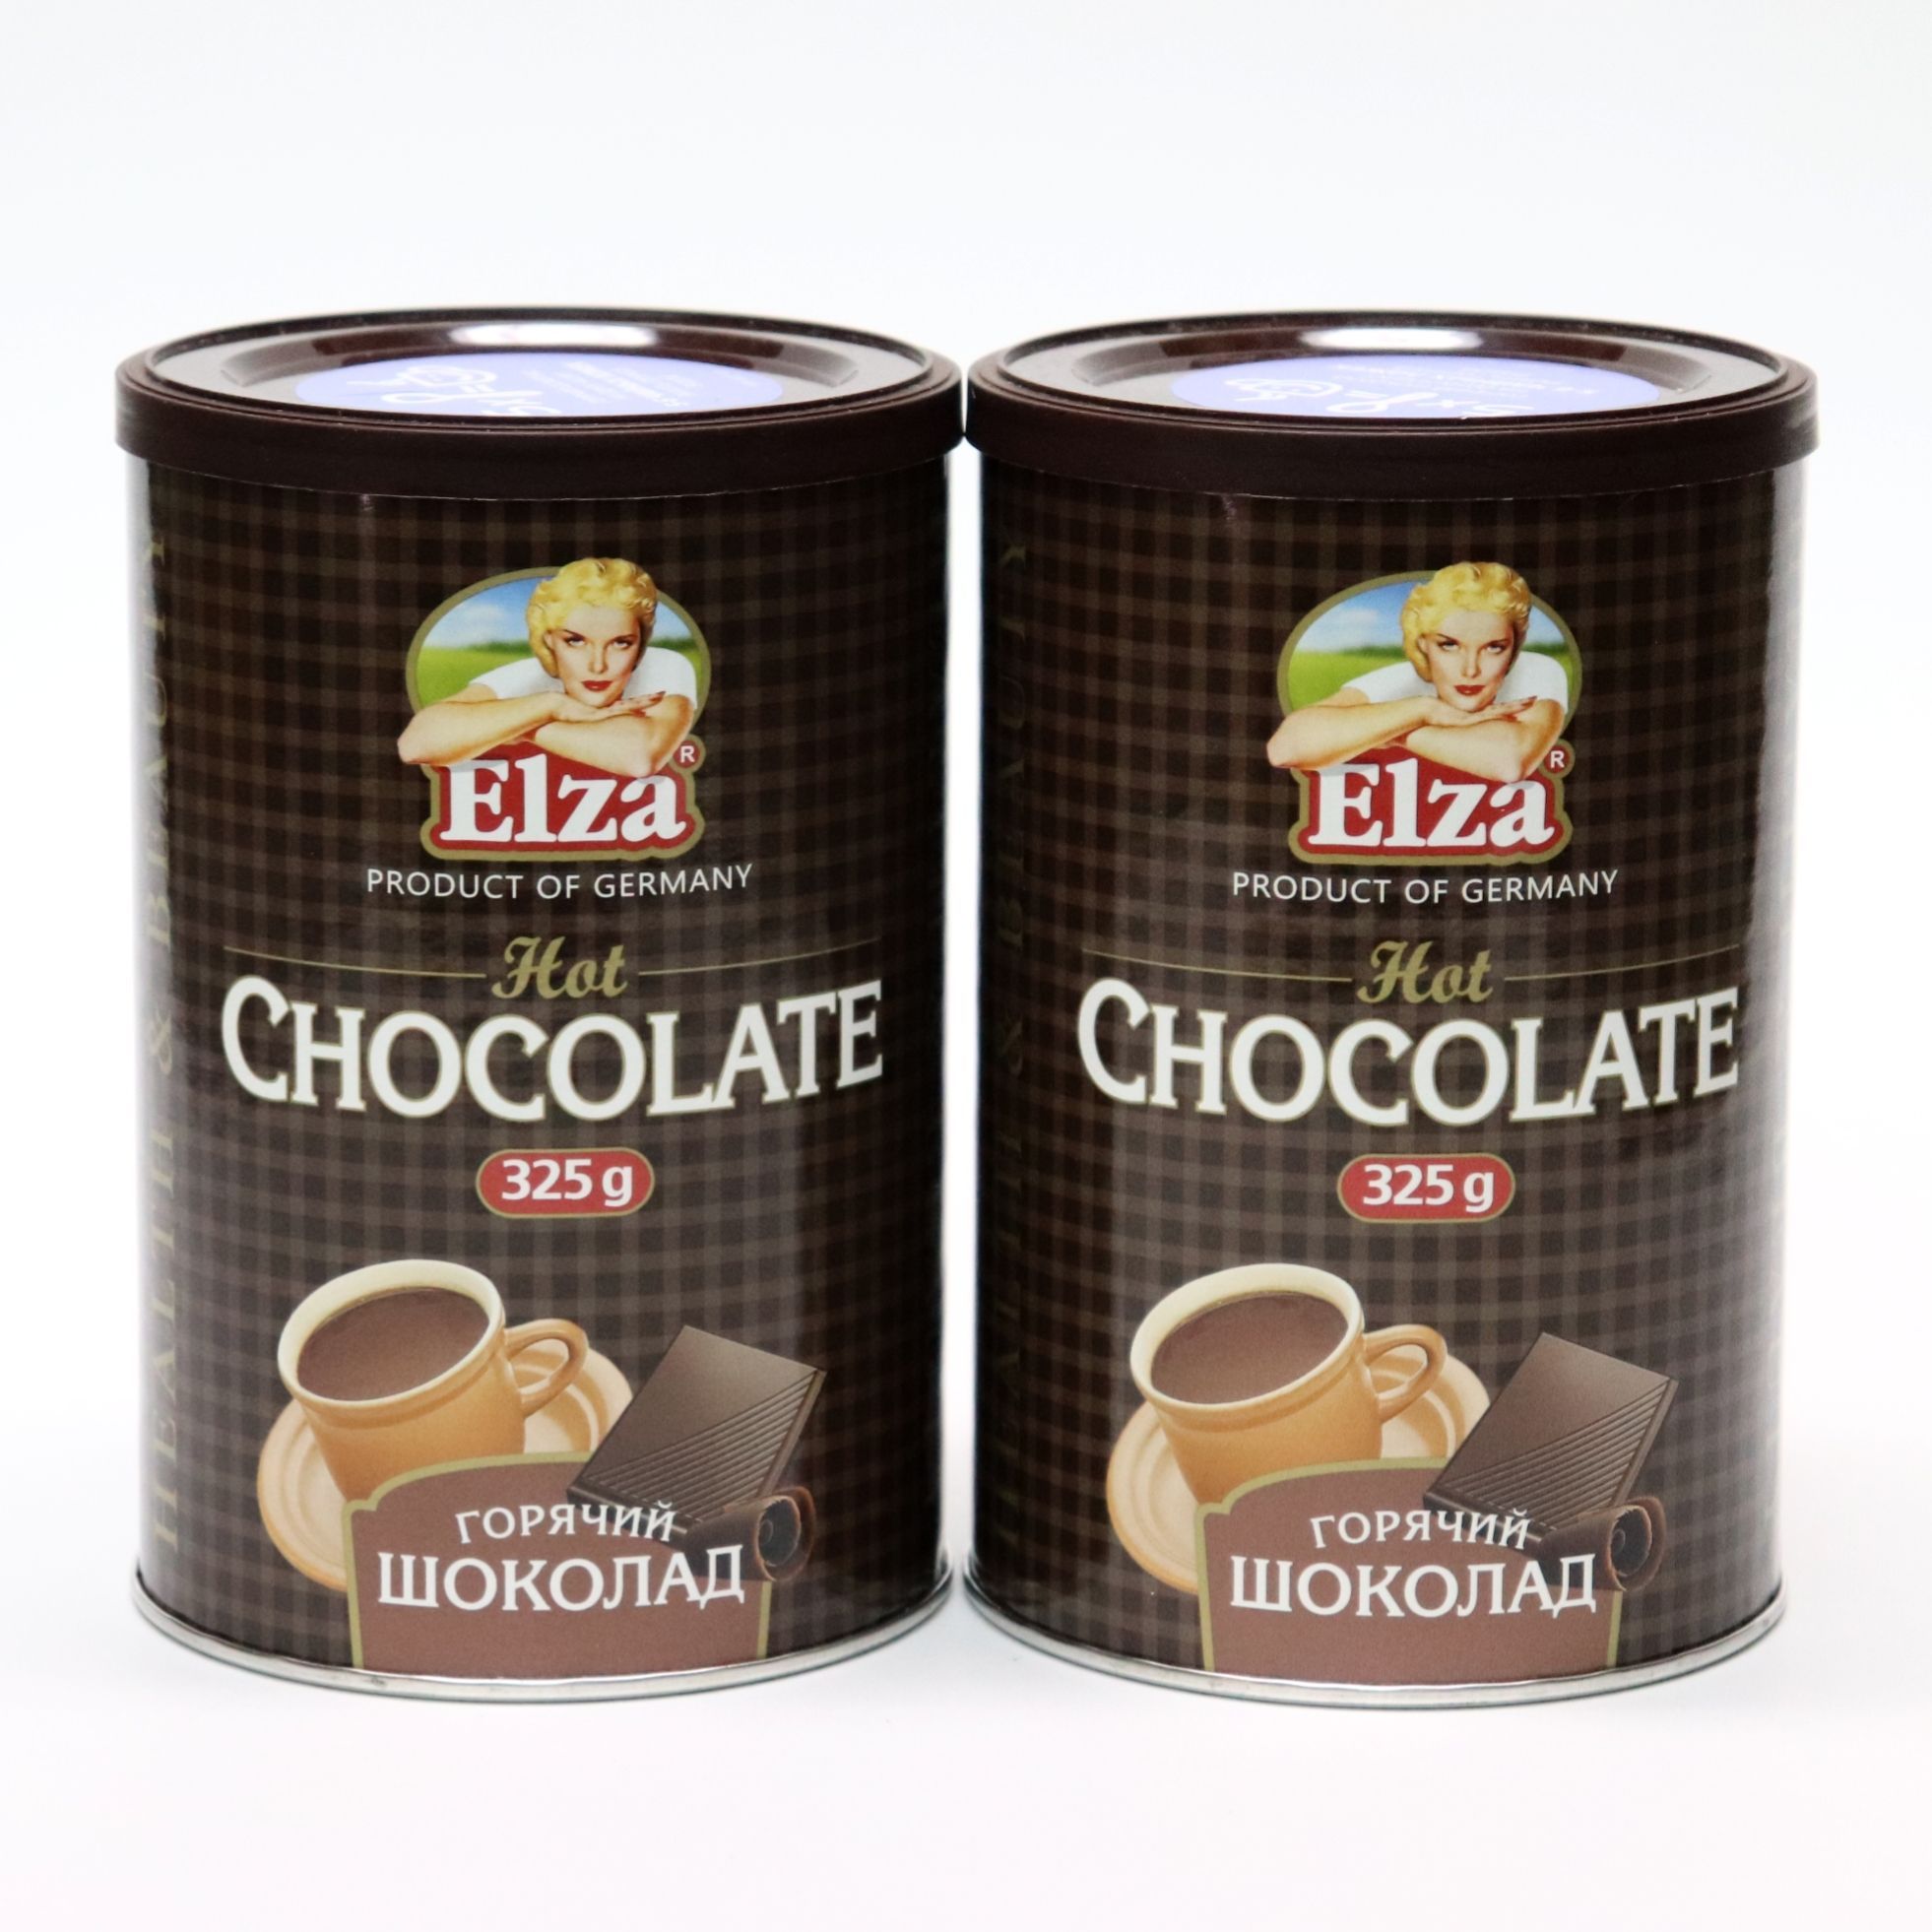 Горячий шоколад elza. Горячий шоколад Elza, 325 гр. Горячий шоколад Elza горячий шоколад растворимый, 325 г, Германия. Горячий шоколад растворимый Elza Choco Band.